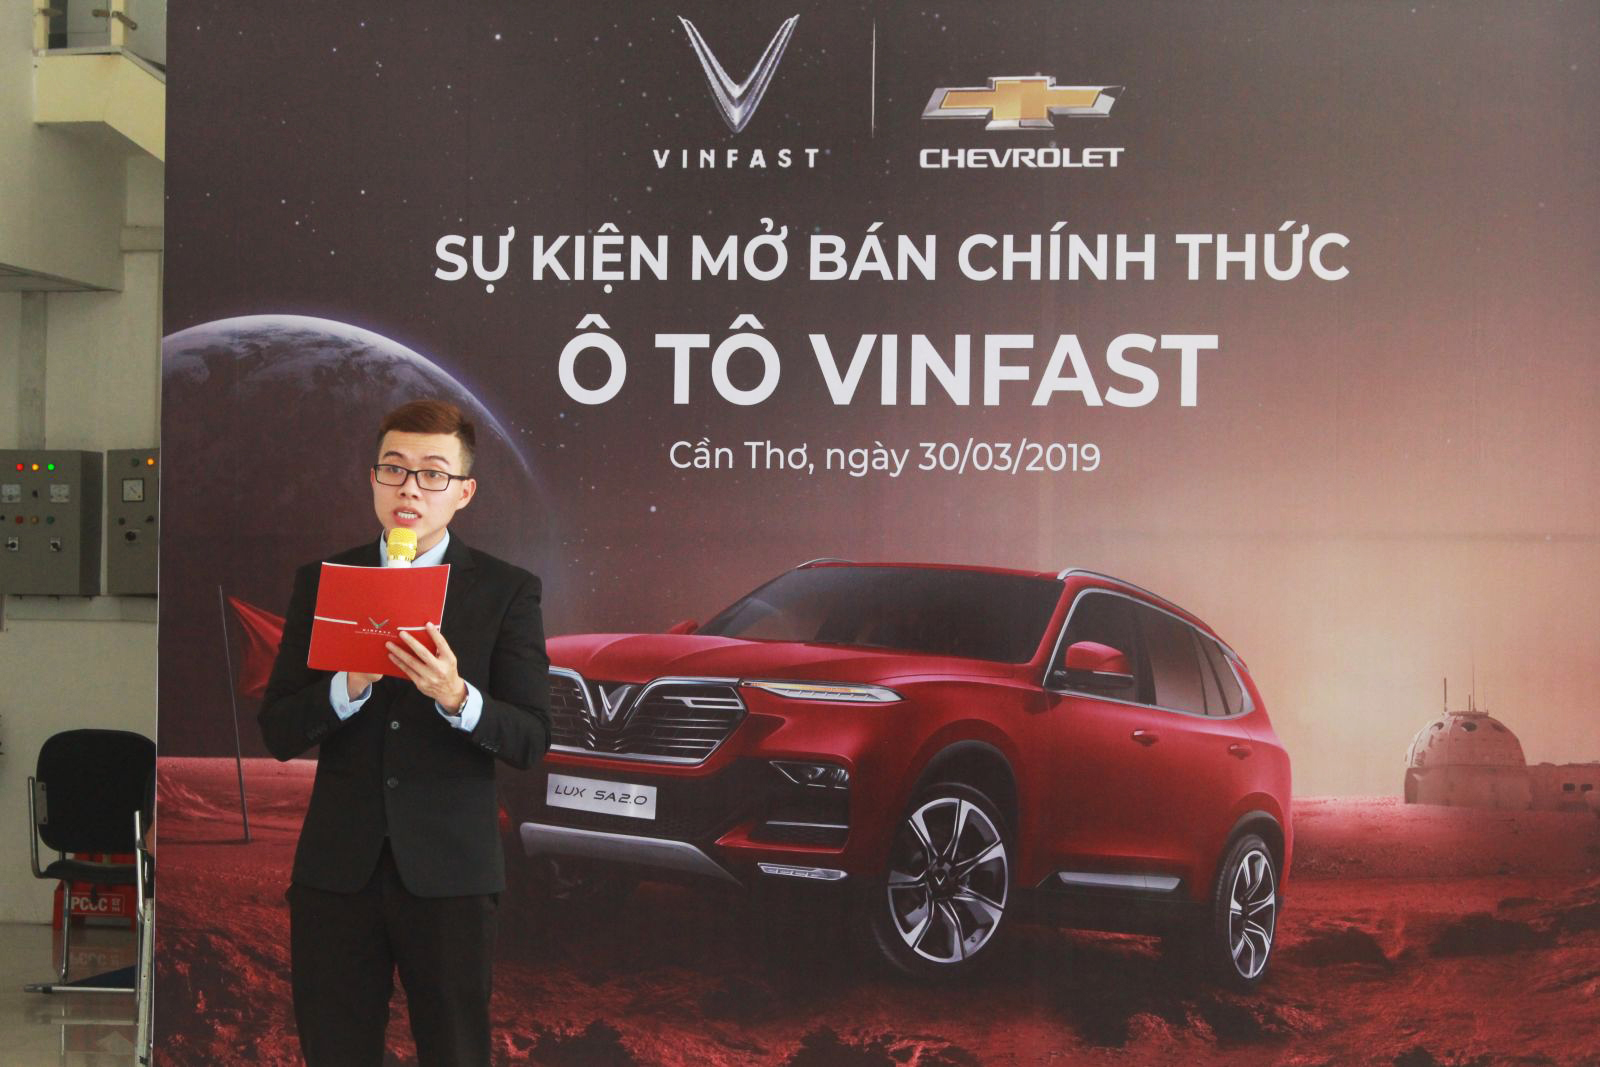 VinFast – Chevrolet Cần Thơ mở bán và nhận đặt cọc chính thức ô tô VinFast